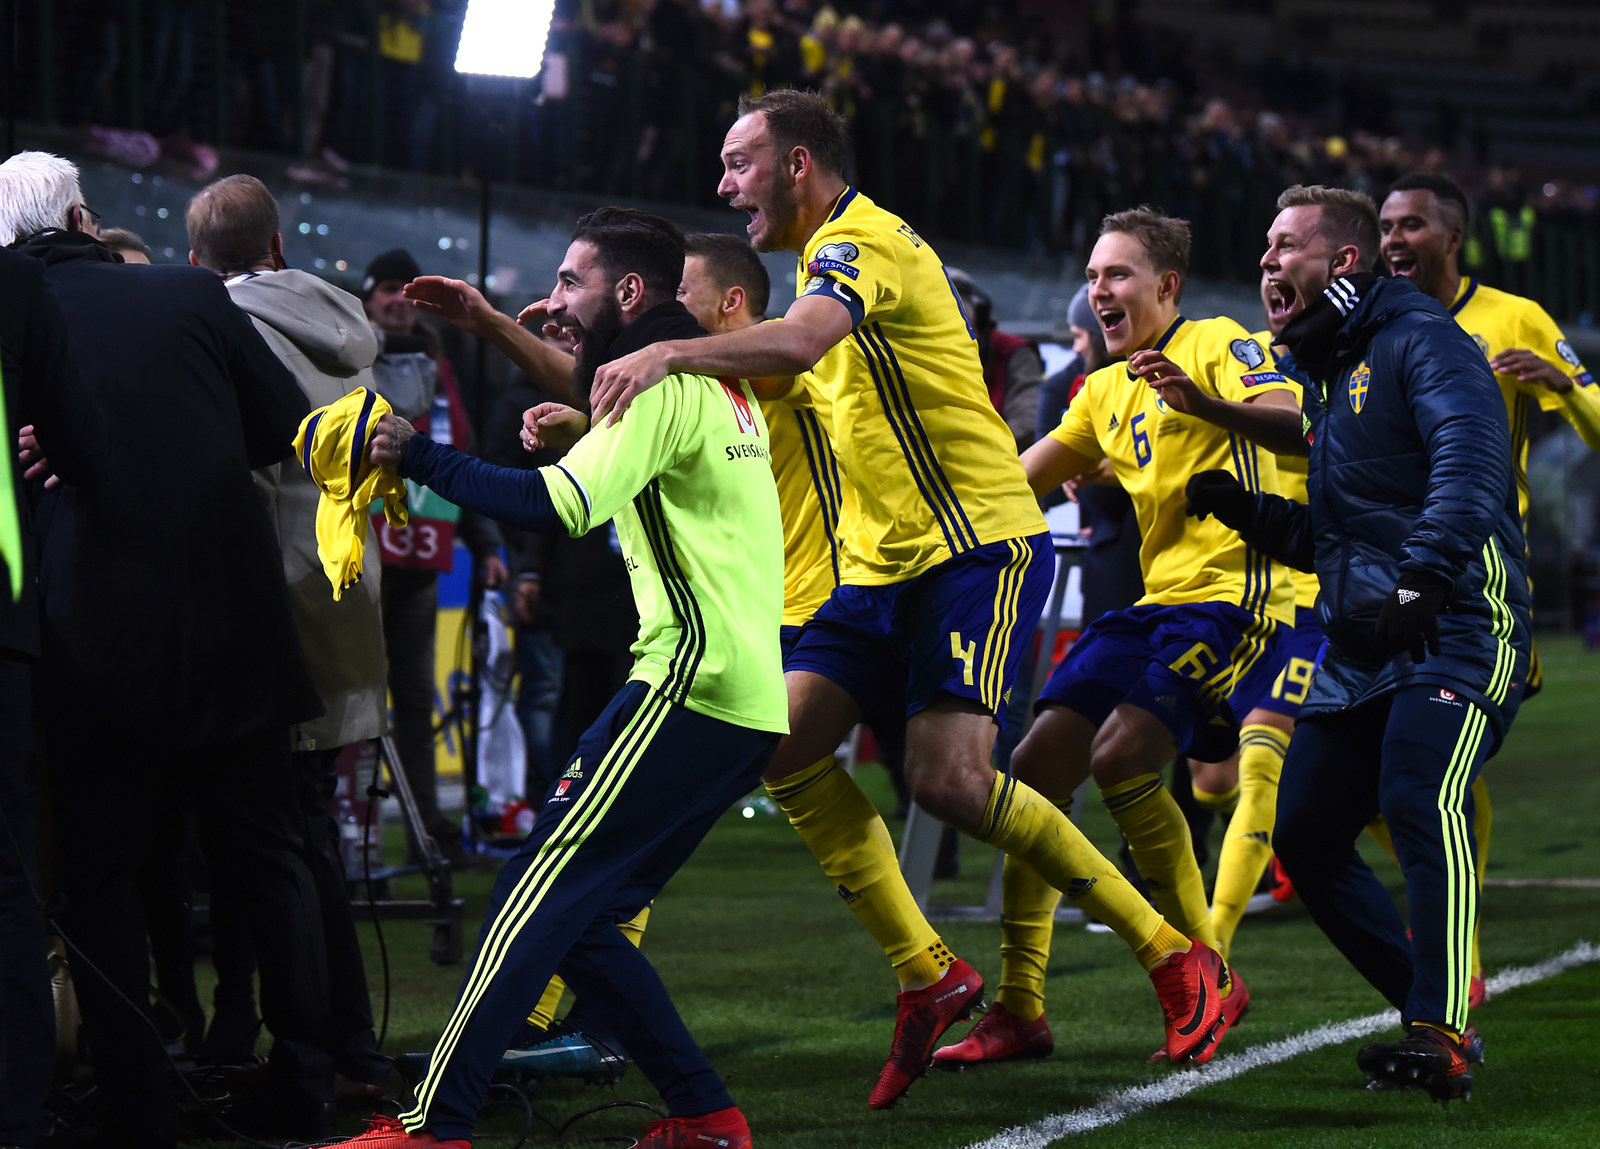 イタリア破りw杯出場のスウェーデン代表 嬉しさのあまりテレビ中継セットを破壊